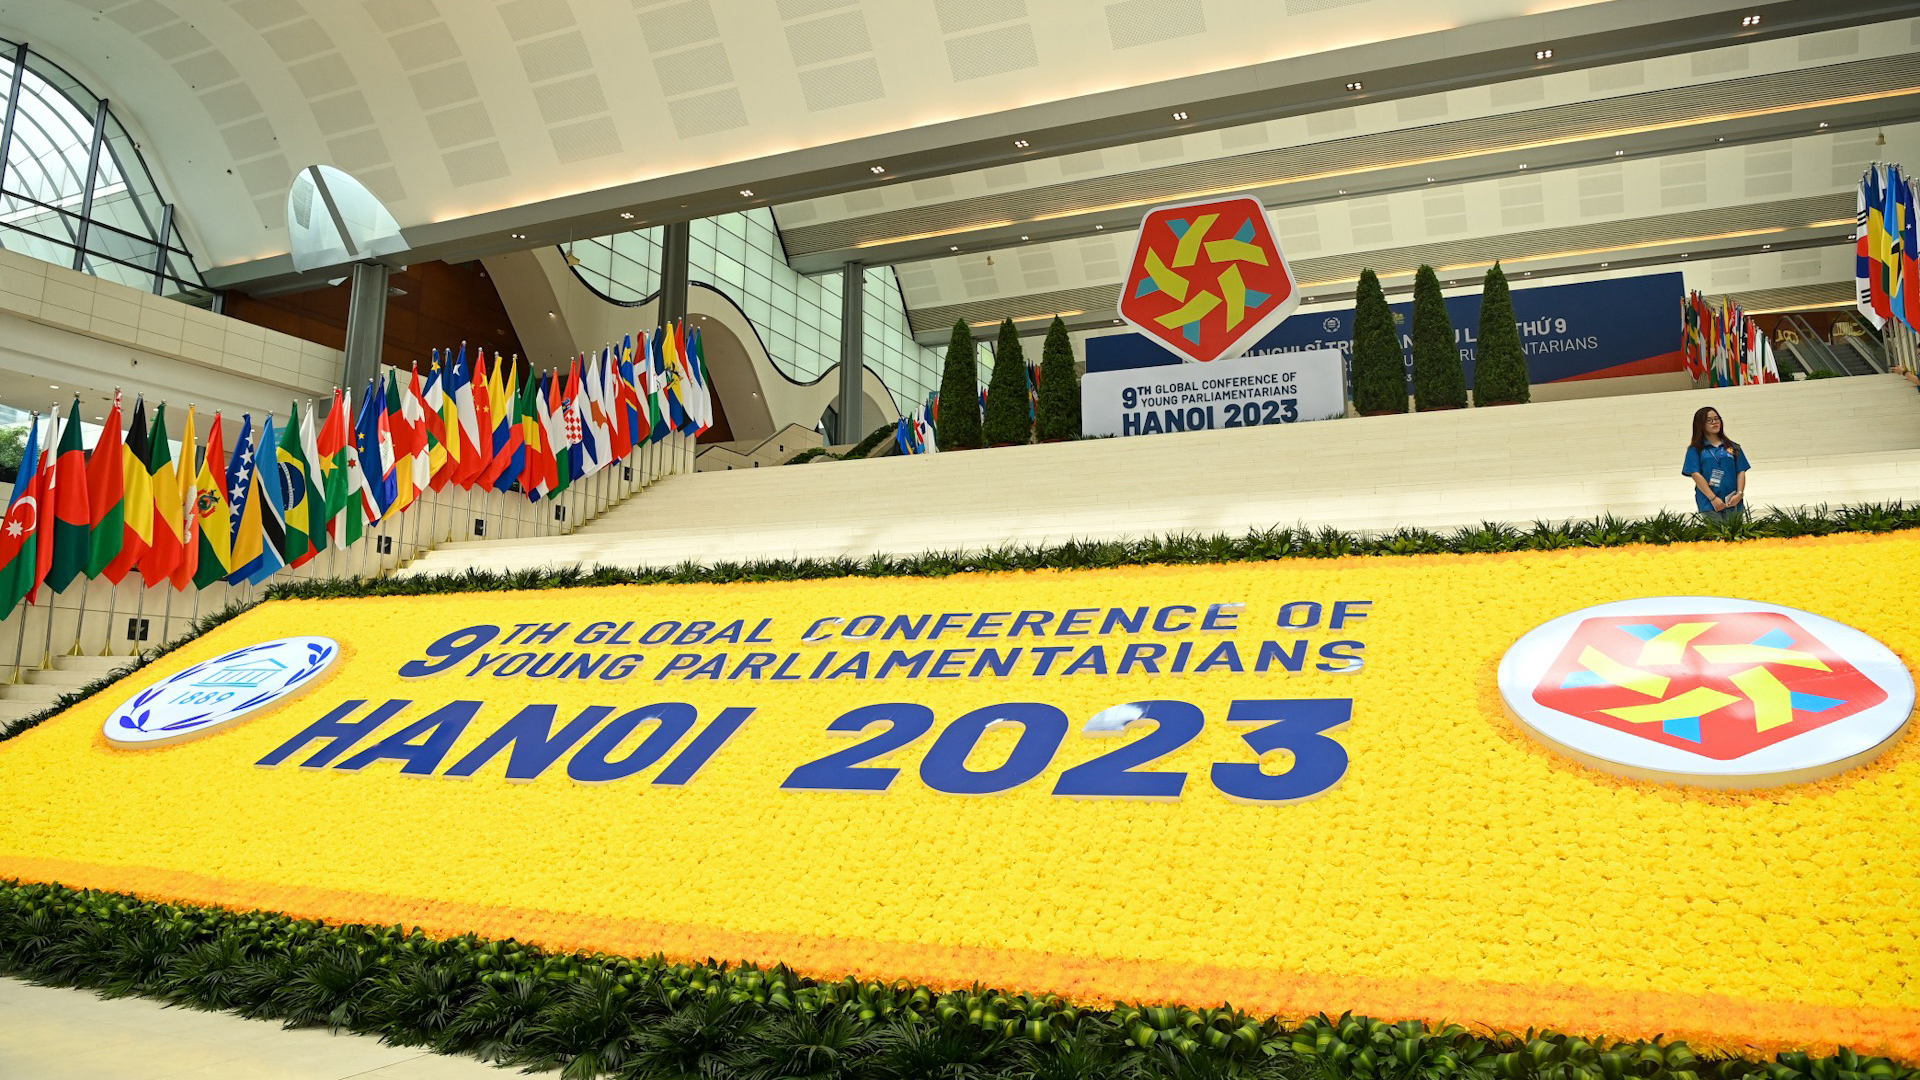 Quang cảnh bên trong Trung tâm Hội nghị Quốc gia, nơi diễn ra Hội nghị Nghị sĩ trẻ toàn cầu lần thứ 9. (Ảnh: DUY LINH)